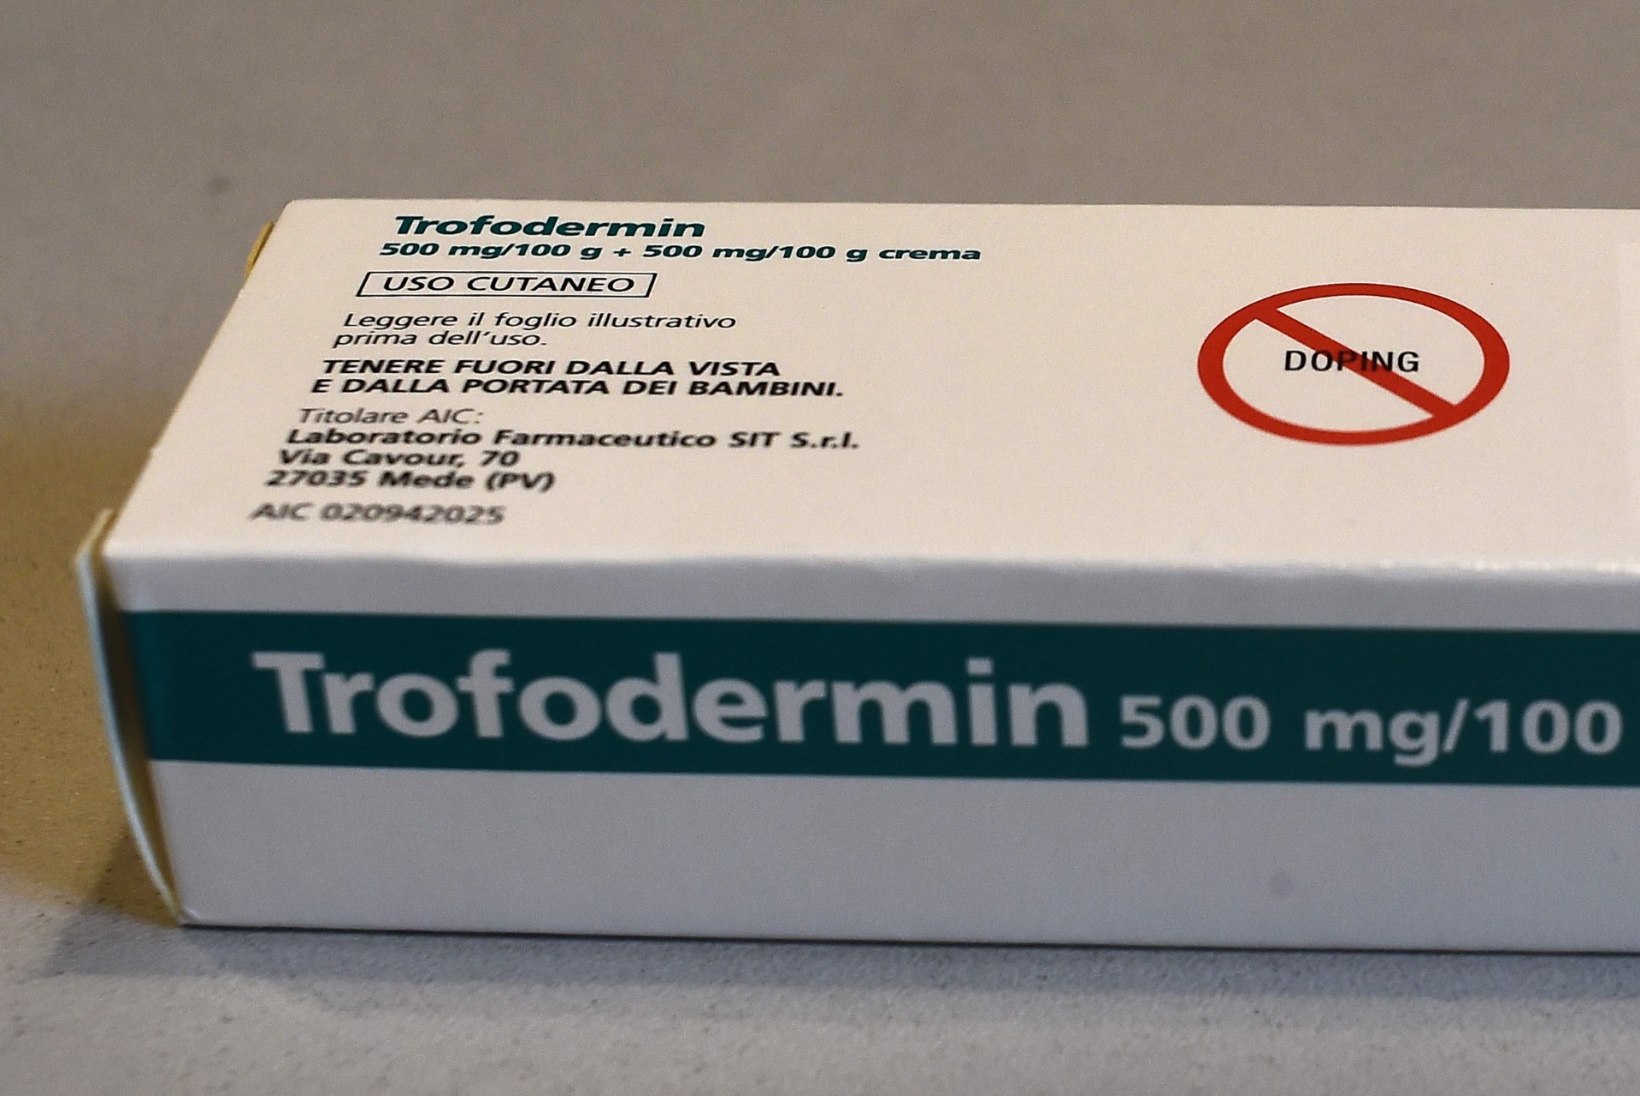 Norra Antidoping käis apteegis, kust Johaugile osteti dopingukreem. "Kõigil pakenditel oli hoiatus: doping!"